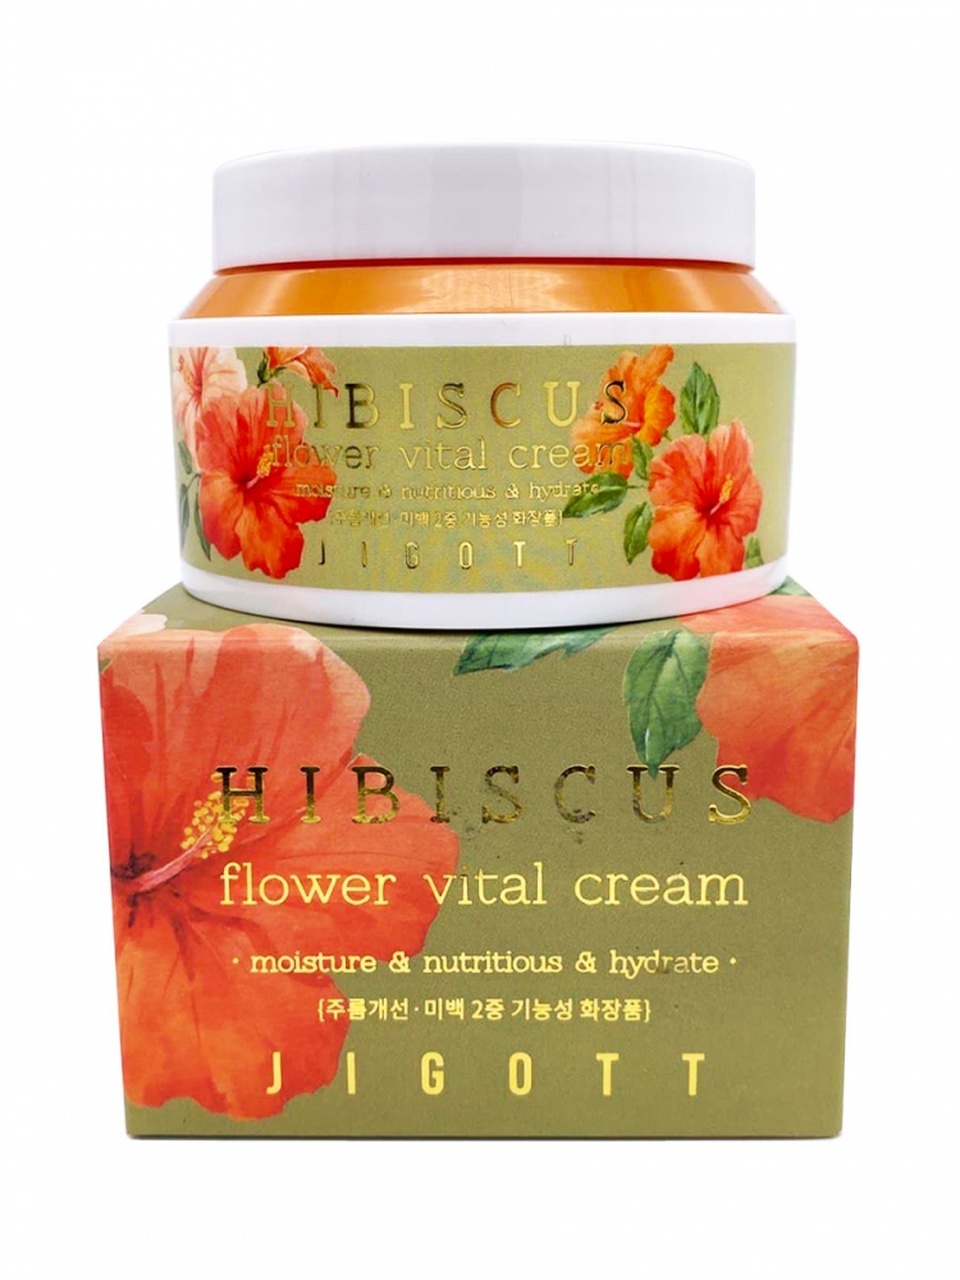 Jigott Крем антивозрастной с экстрактом гибискуса – Hibiscus flower vital cream, 100мл - 910 ₽, заказать онлайн.